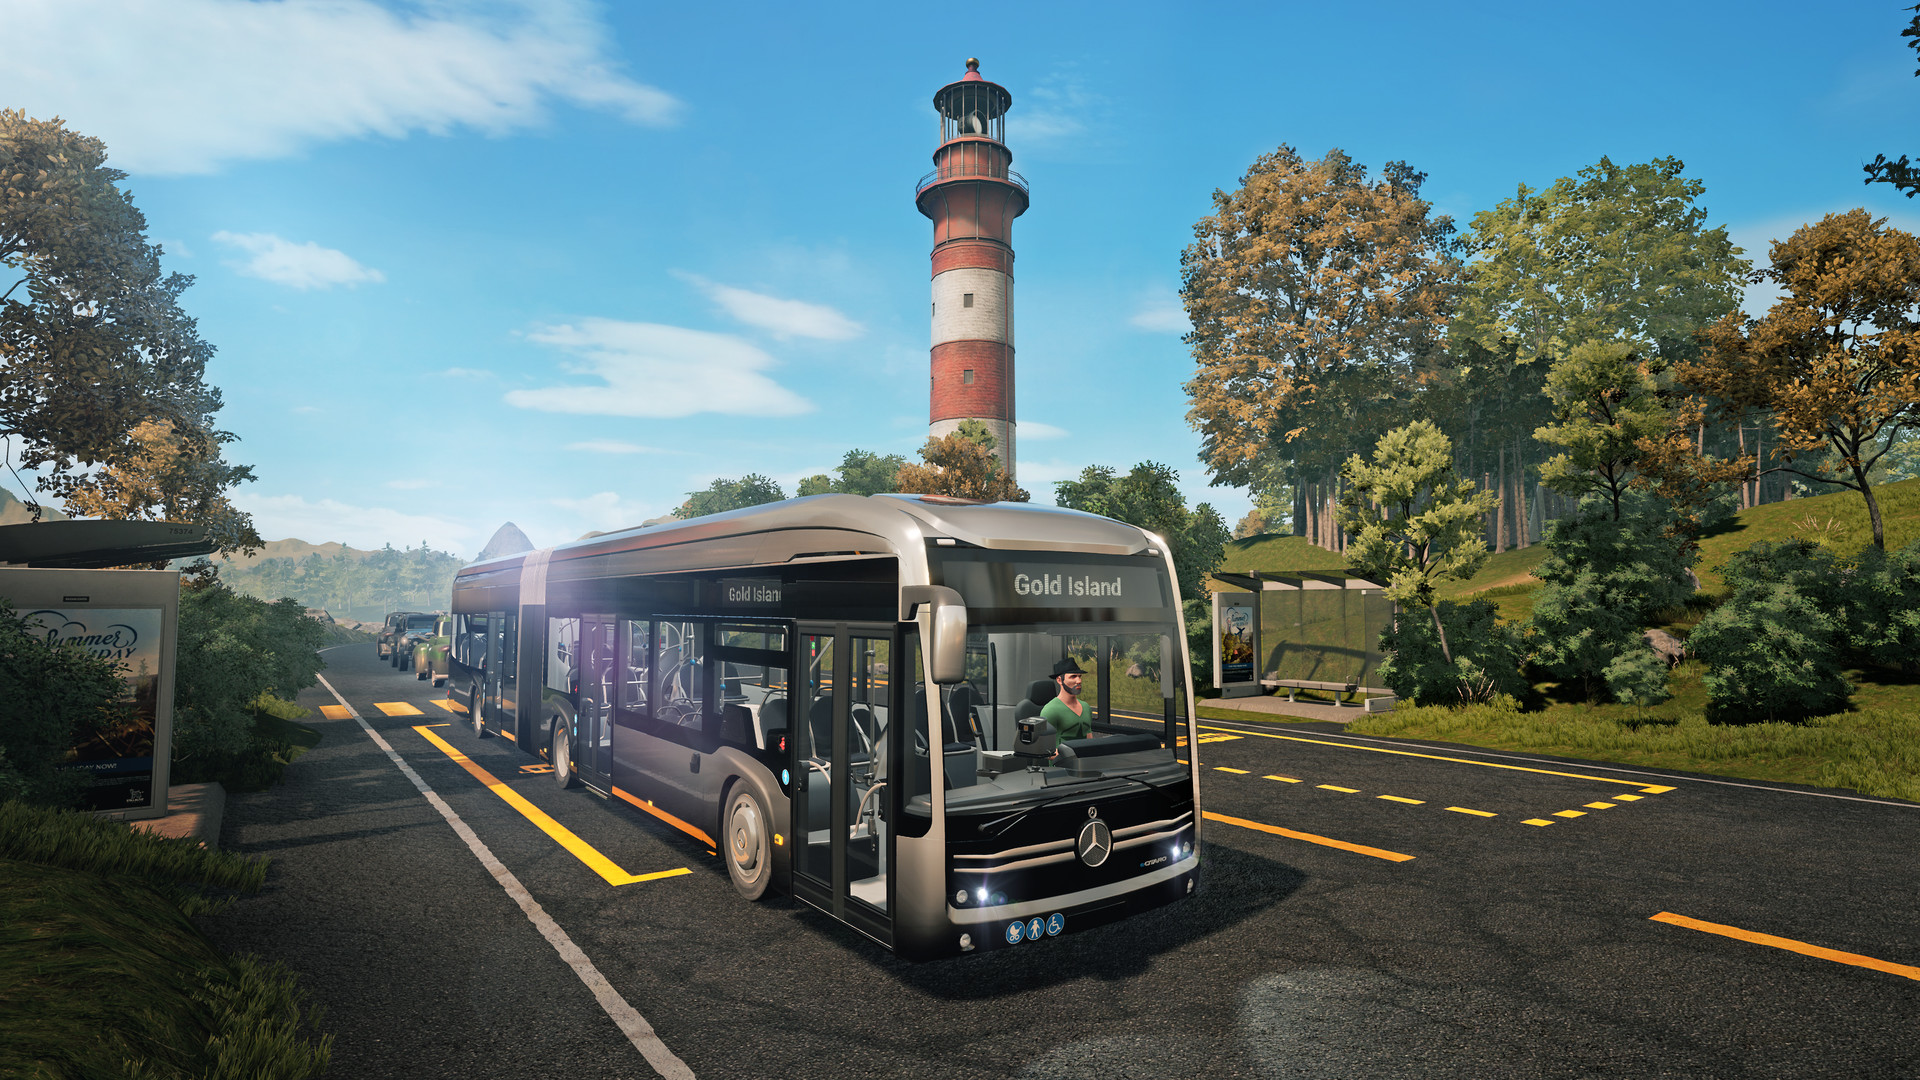 Bus Simulator 21 Steam Altergift